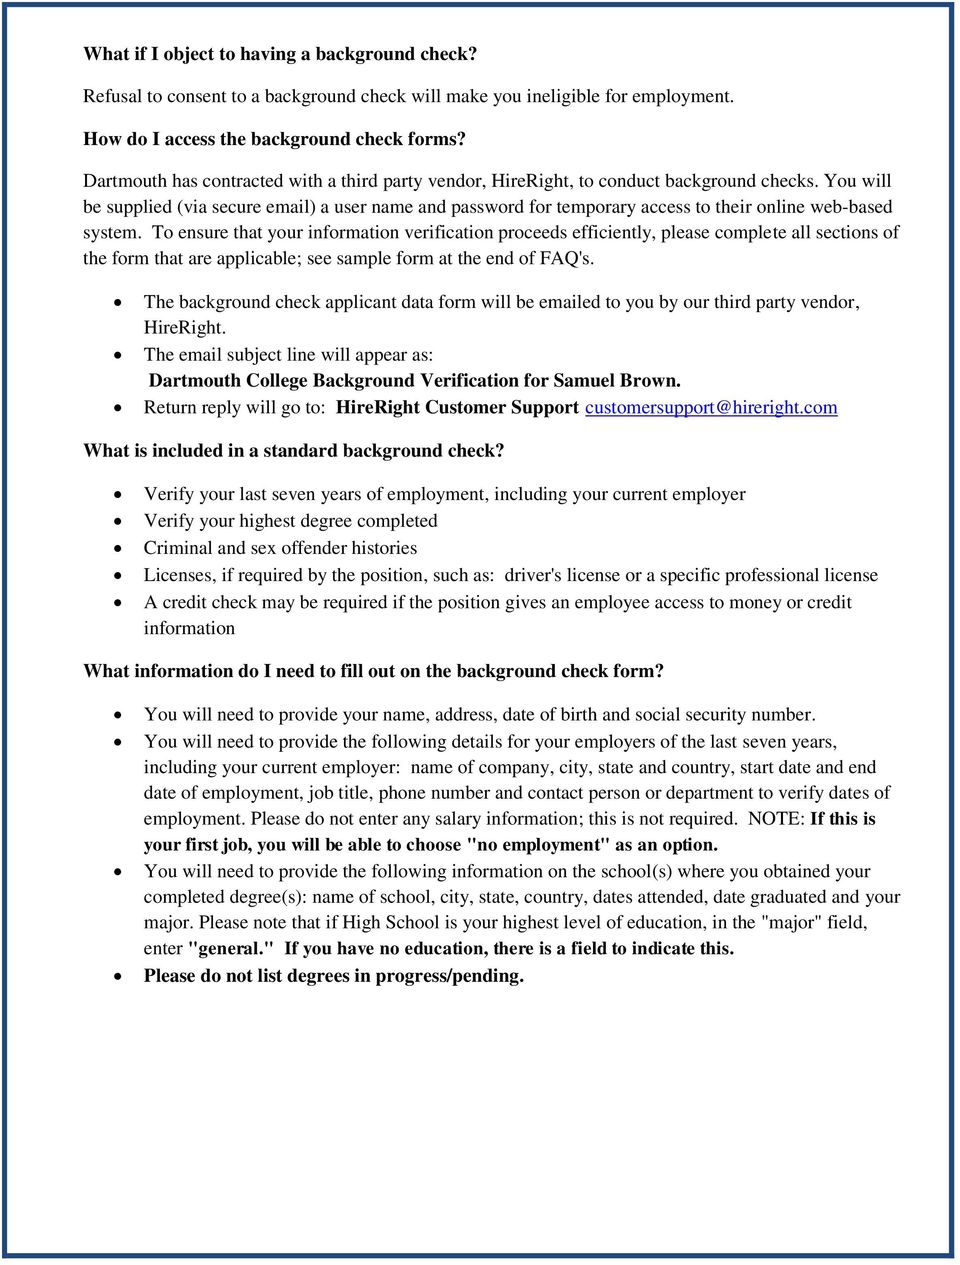 Dartmouth College Background Check FAQ's - PDF Free Download